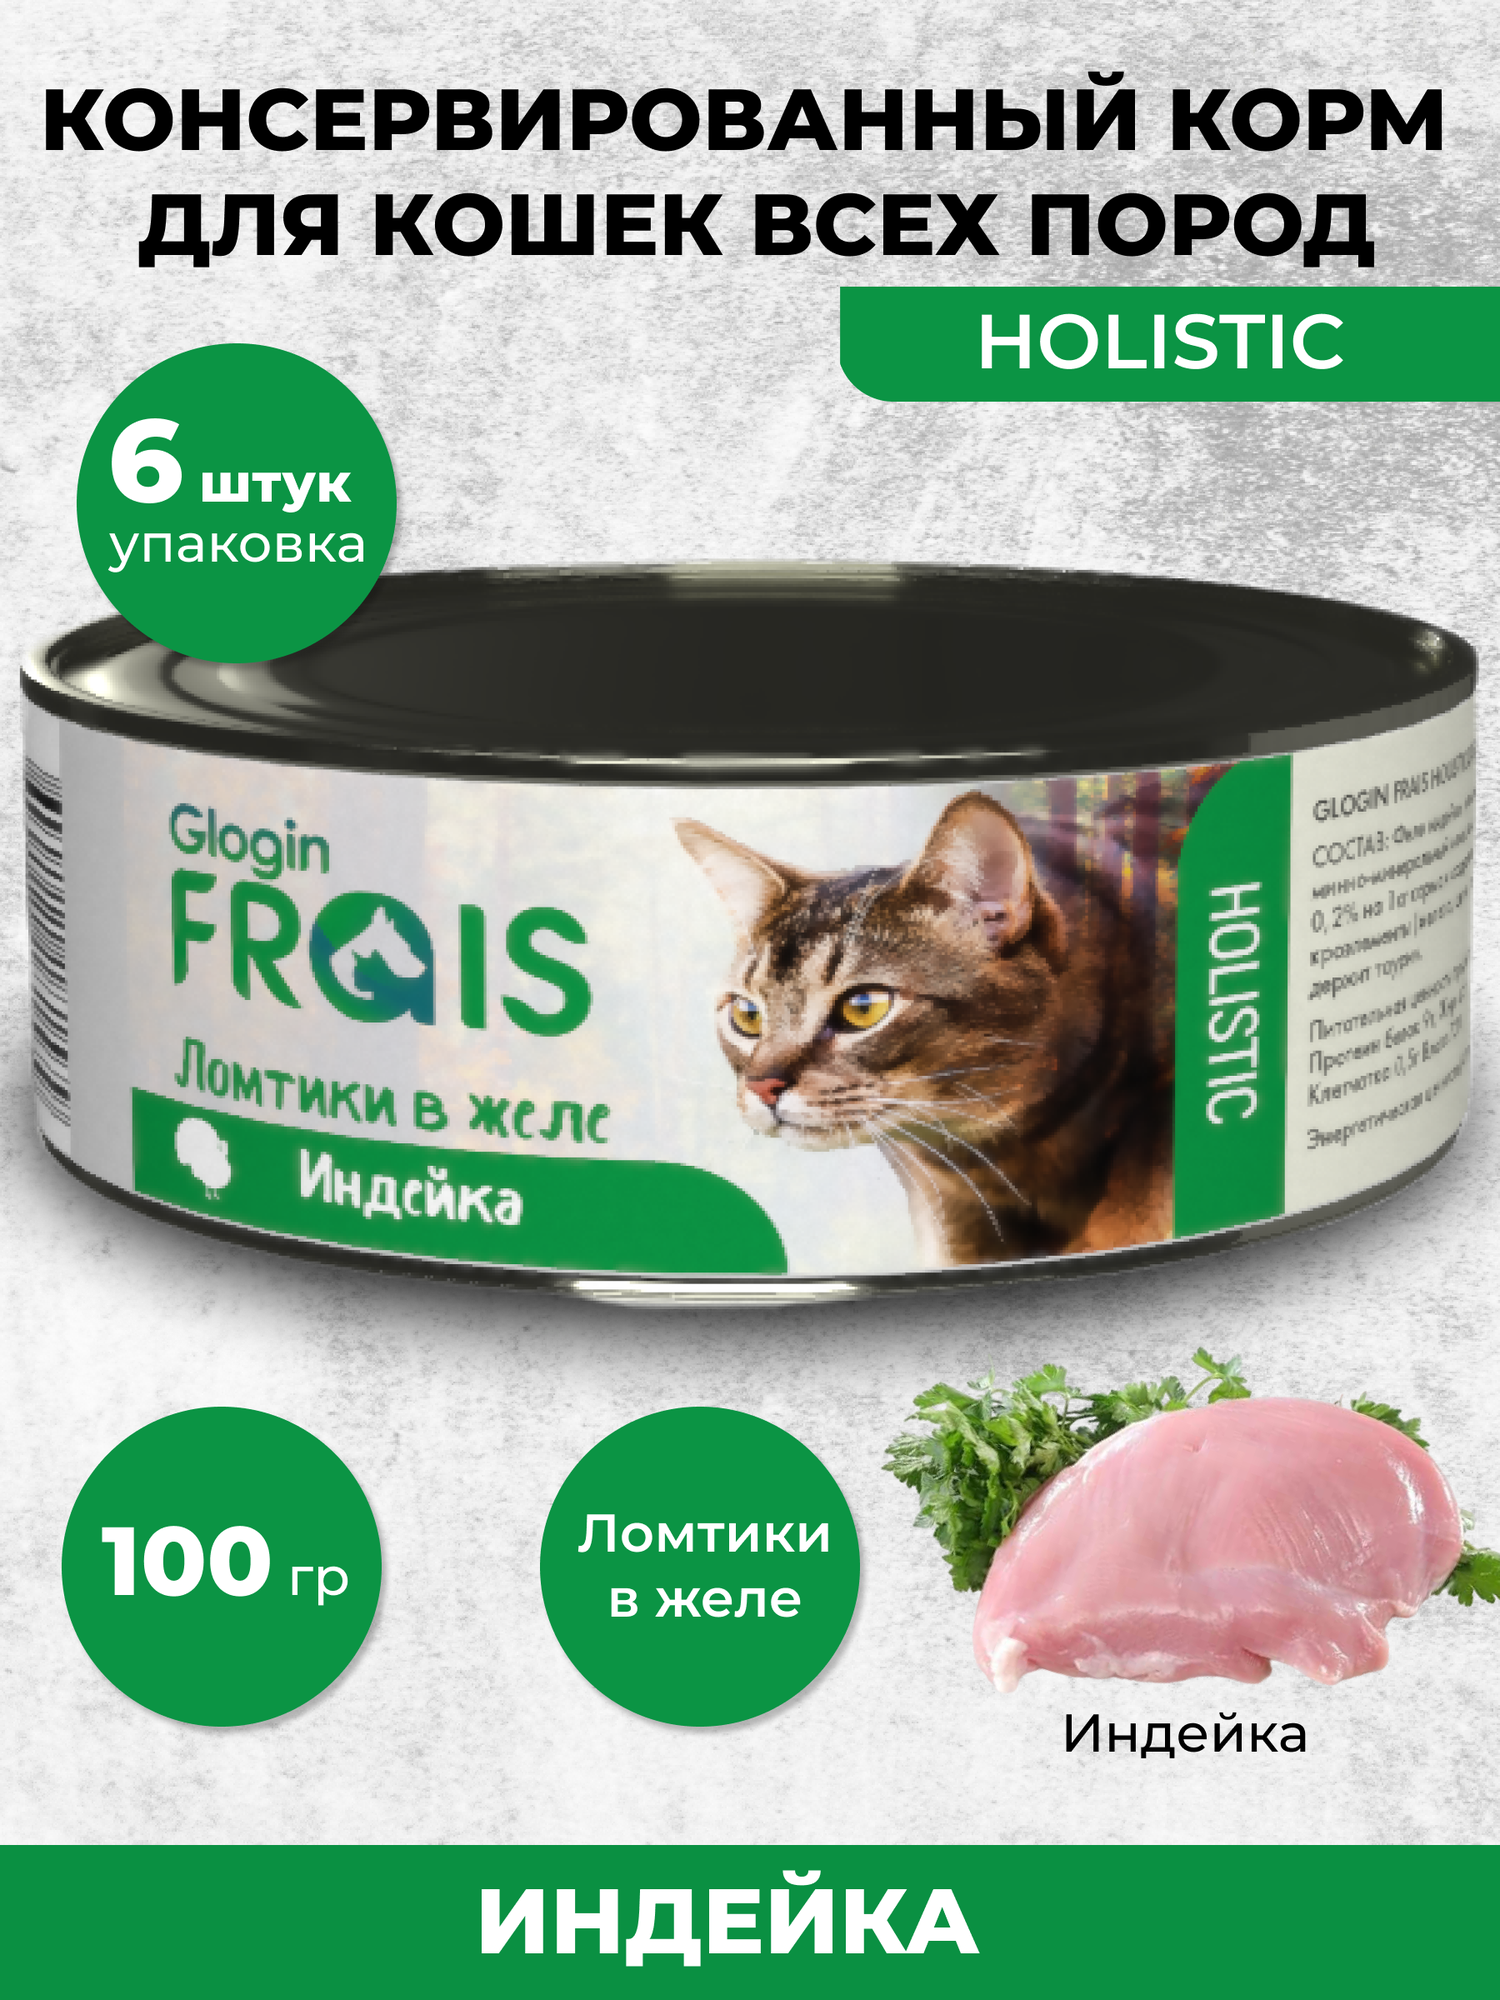 Консервы Glogin Frais Holistic для кошек ломтики в желе, индейка, 100 г * 6 шт